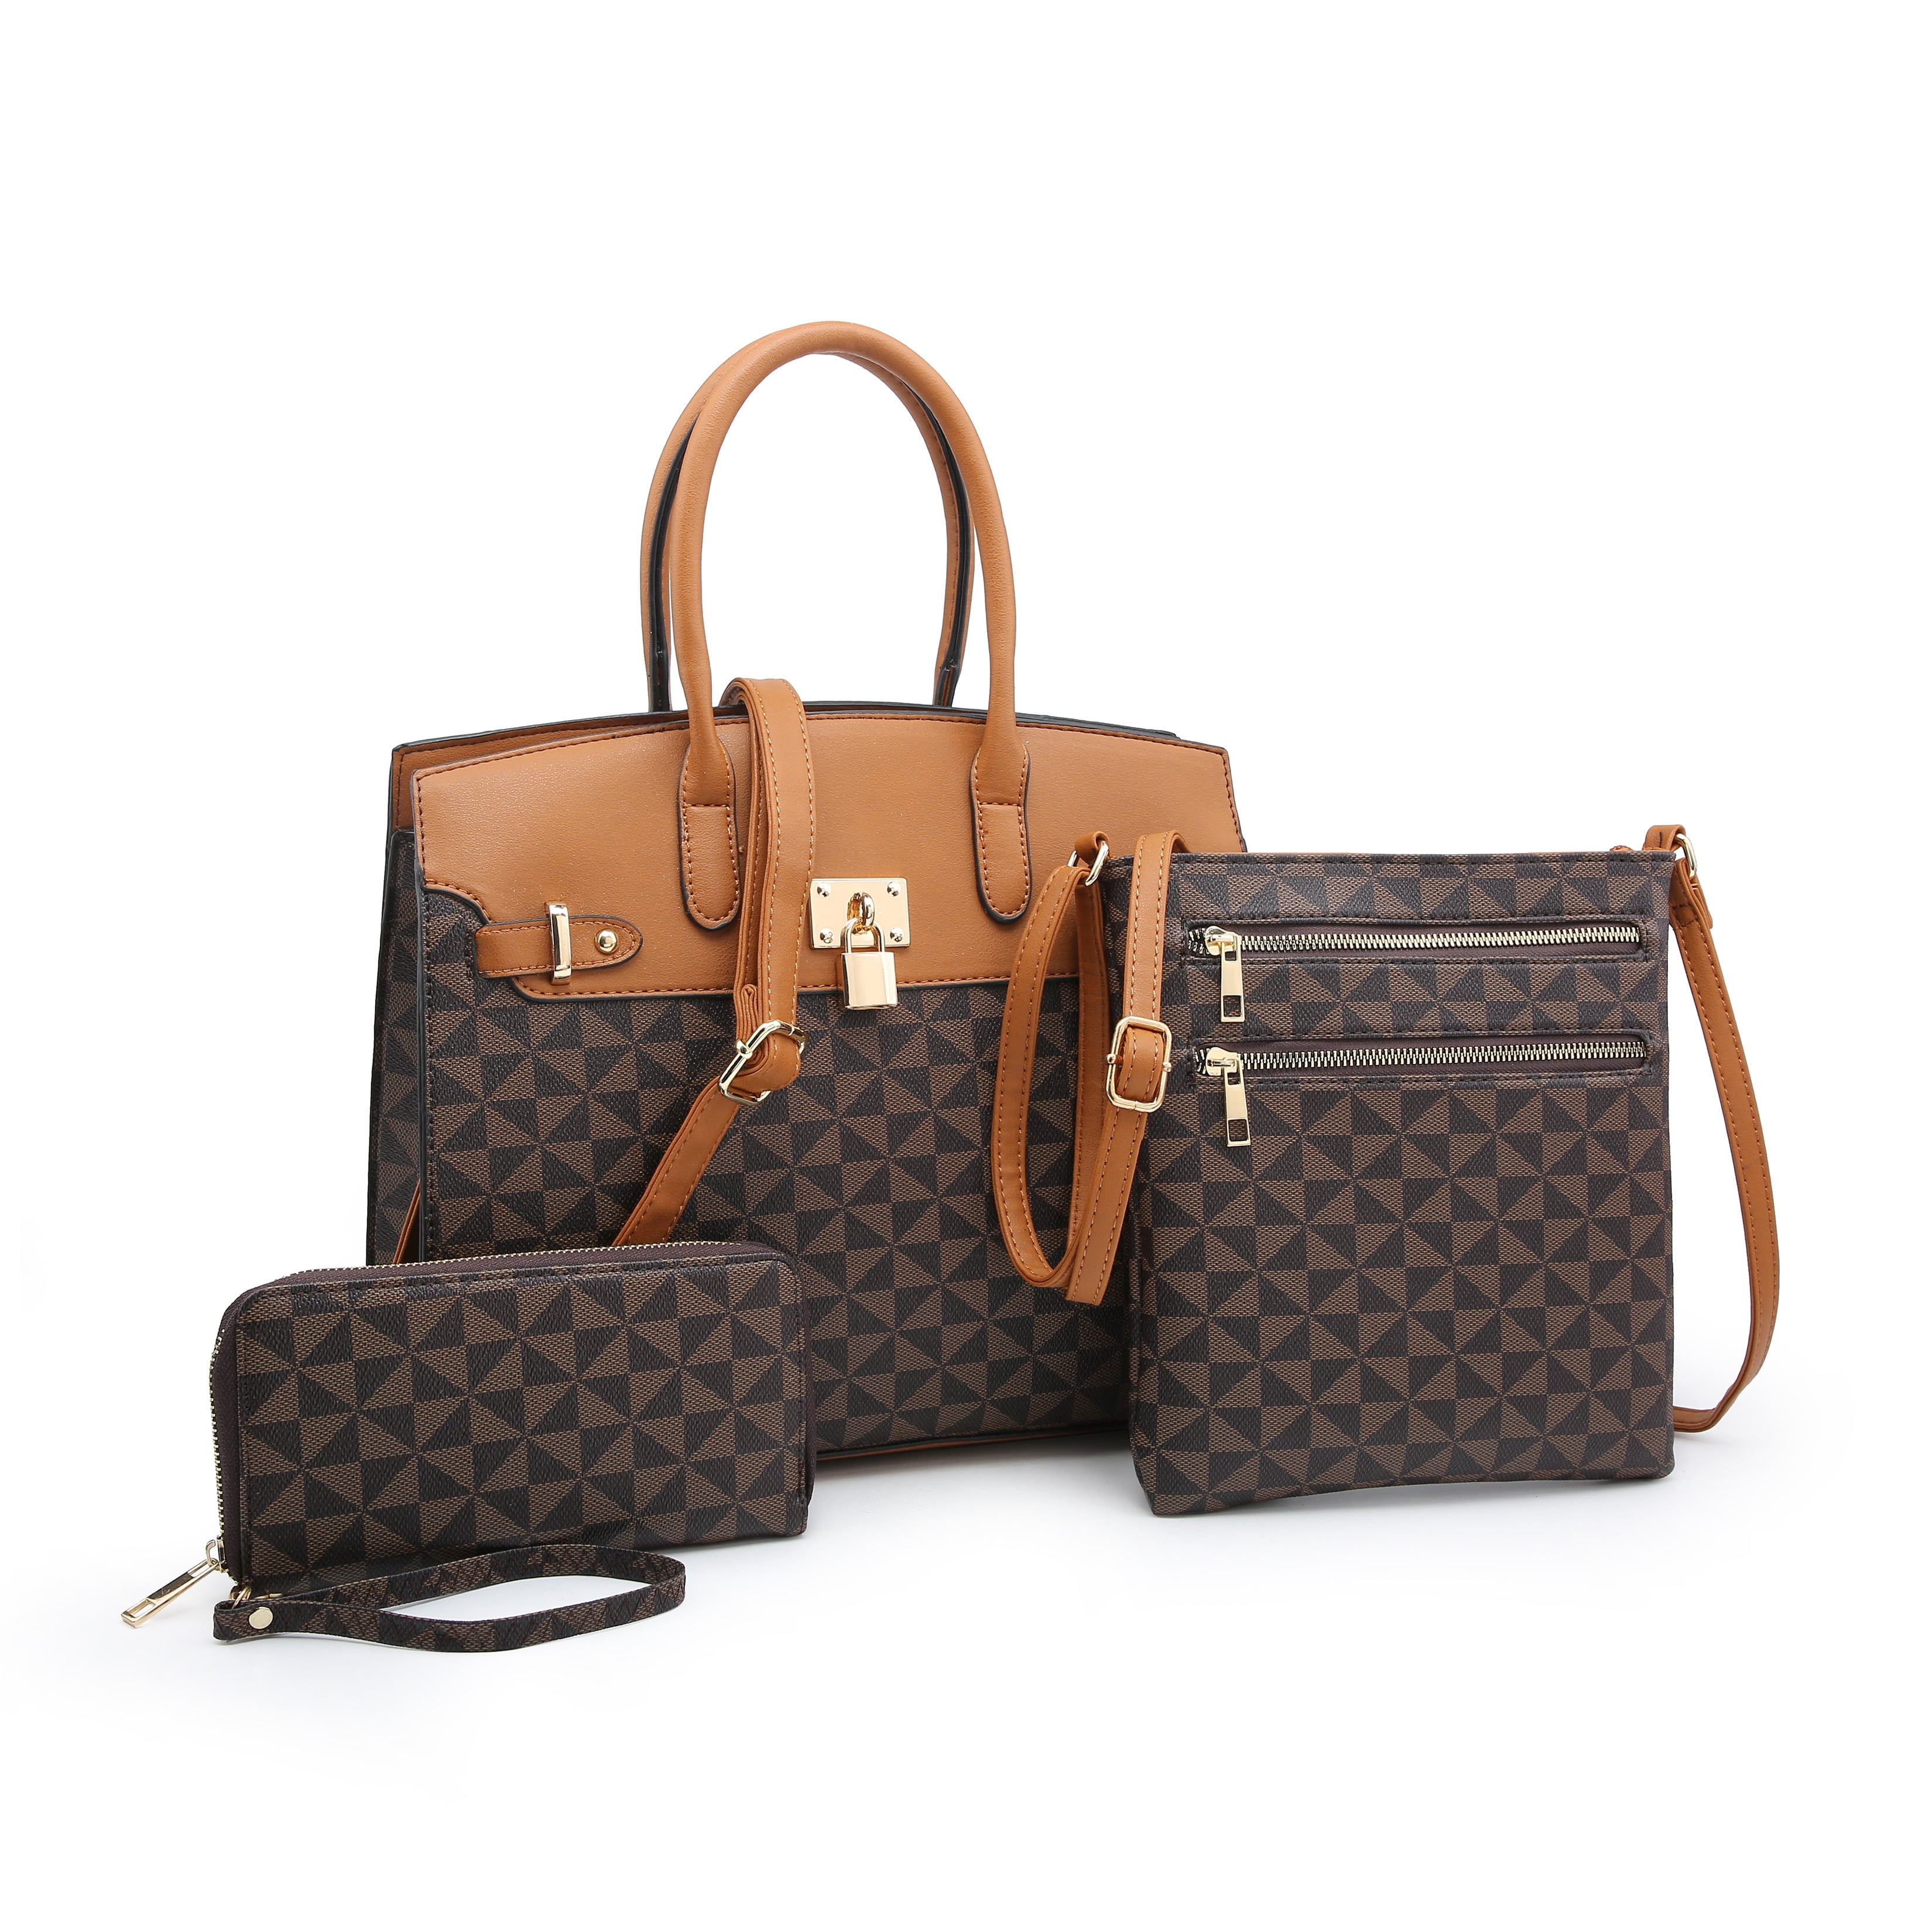 Poppy Handbags Gift Set 3 in 1 Women's Top Handle Satchel Totes Handbag ...